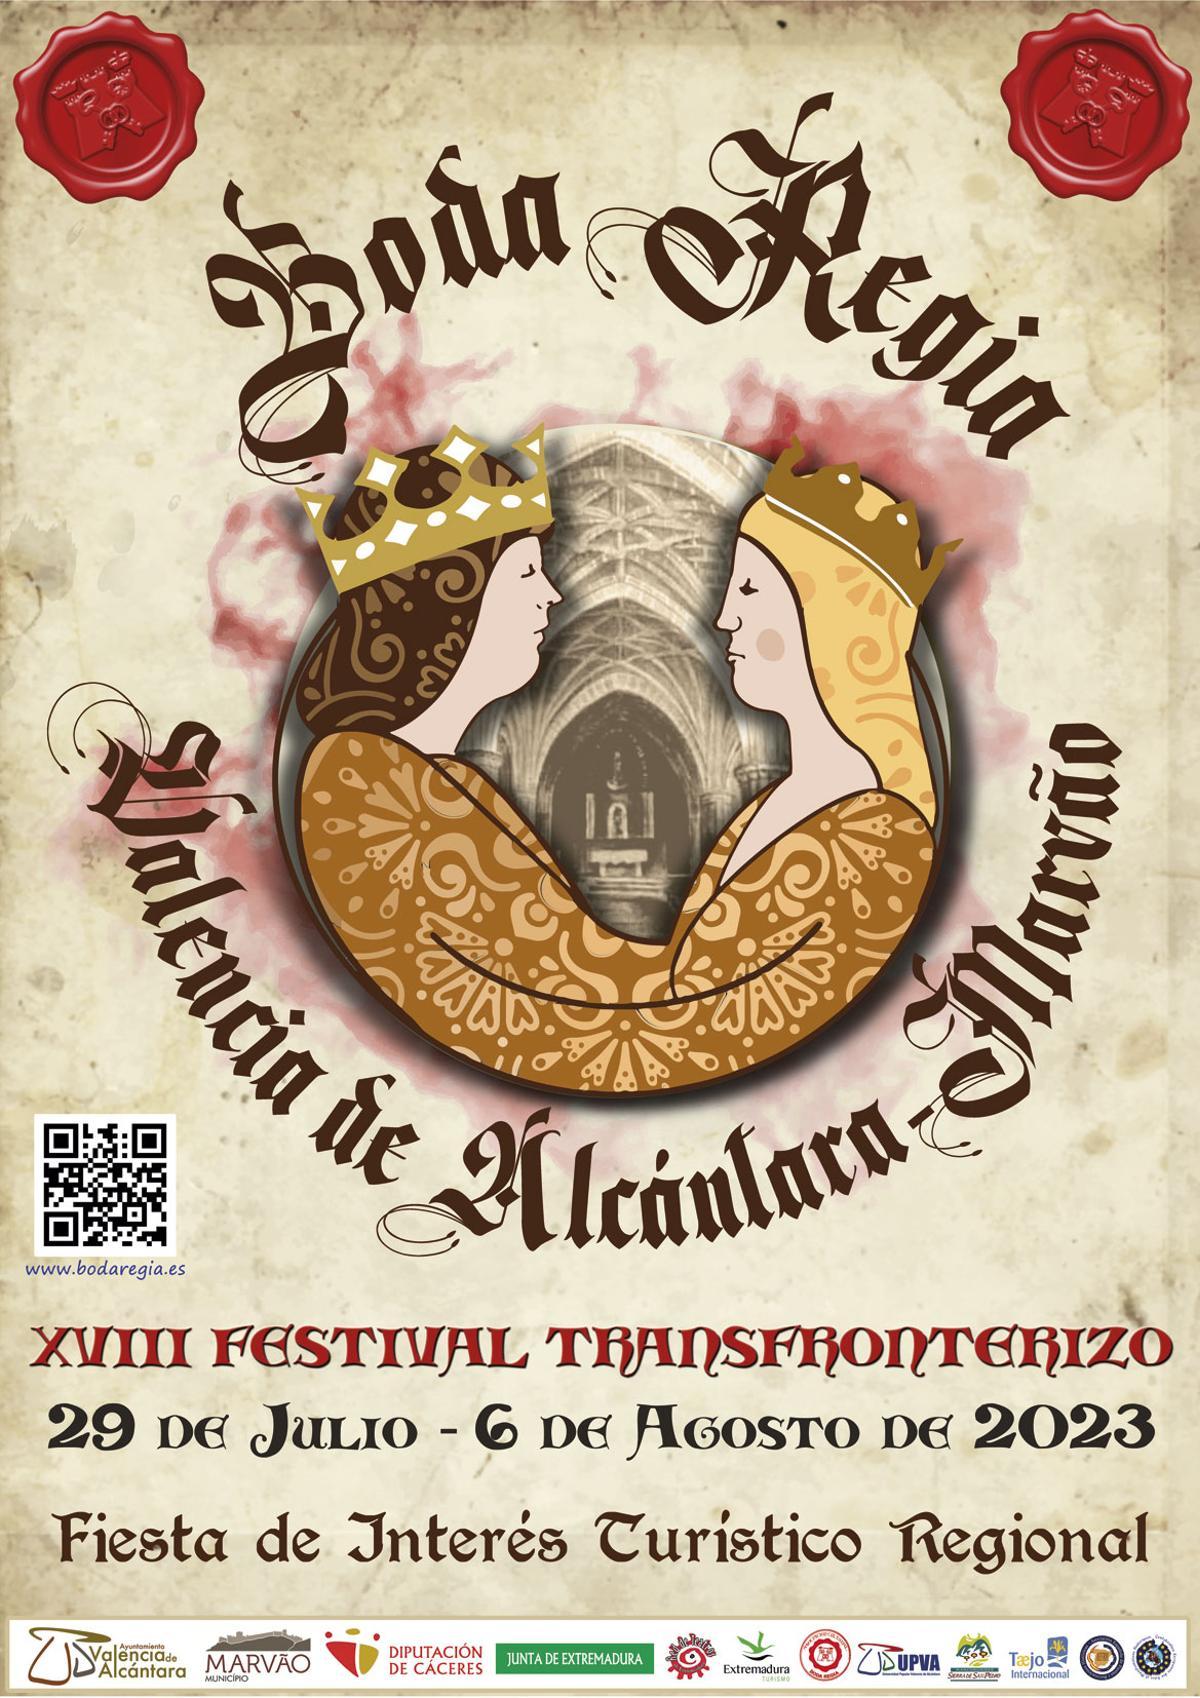 Cartel de la XVIII edición del Festival Transfroterizo Boda Regia